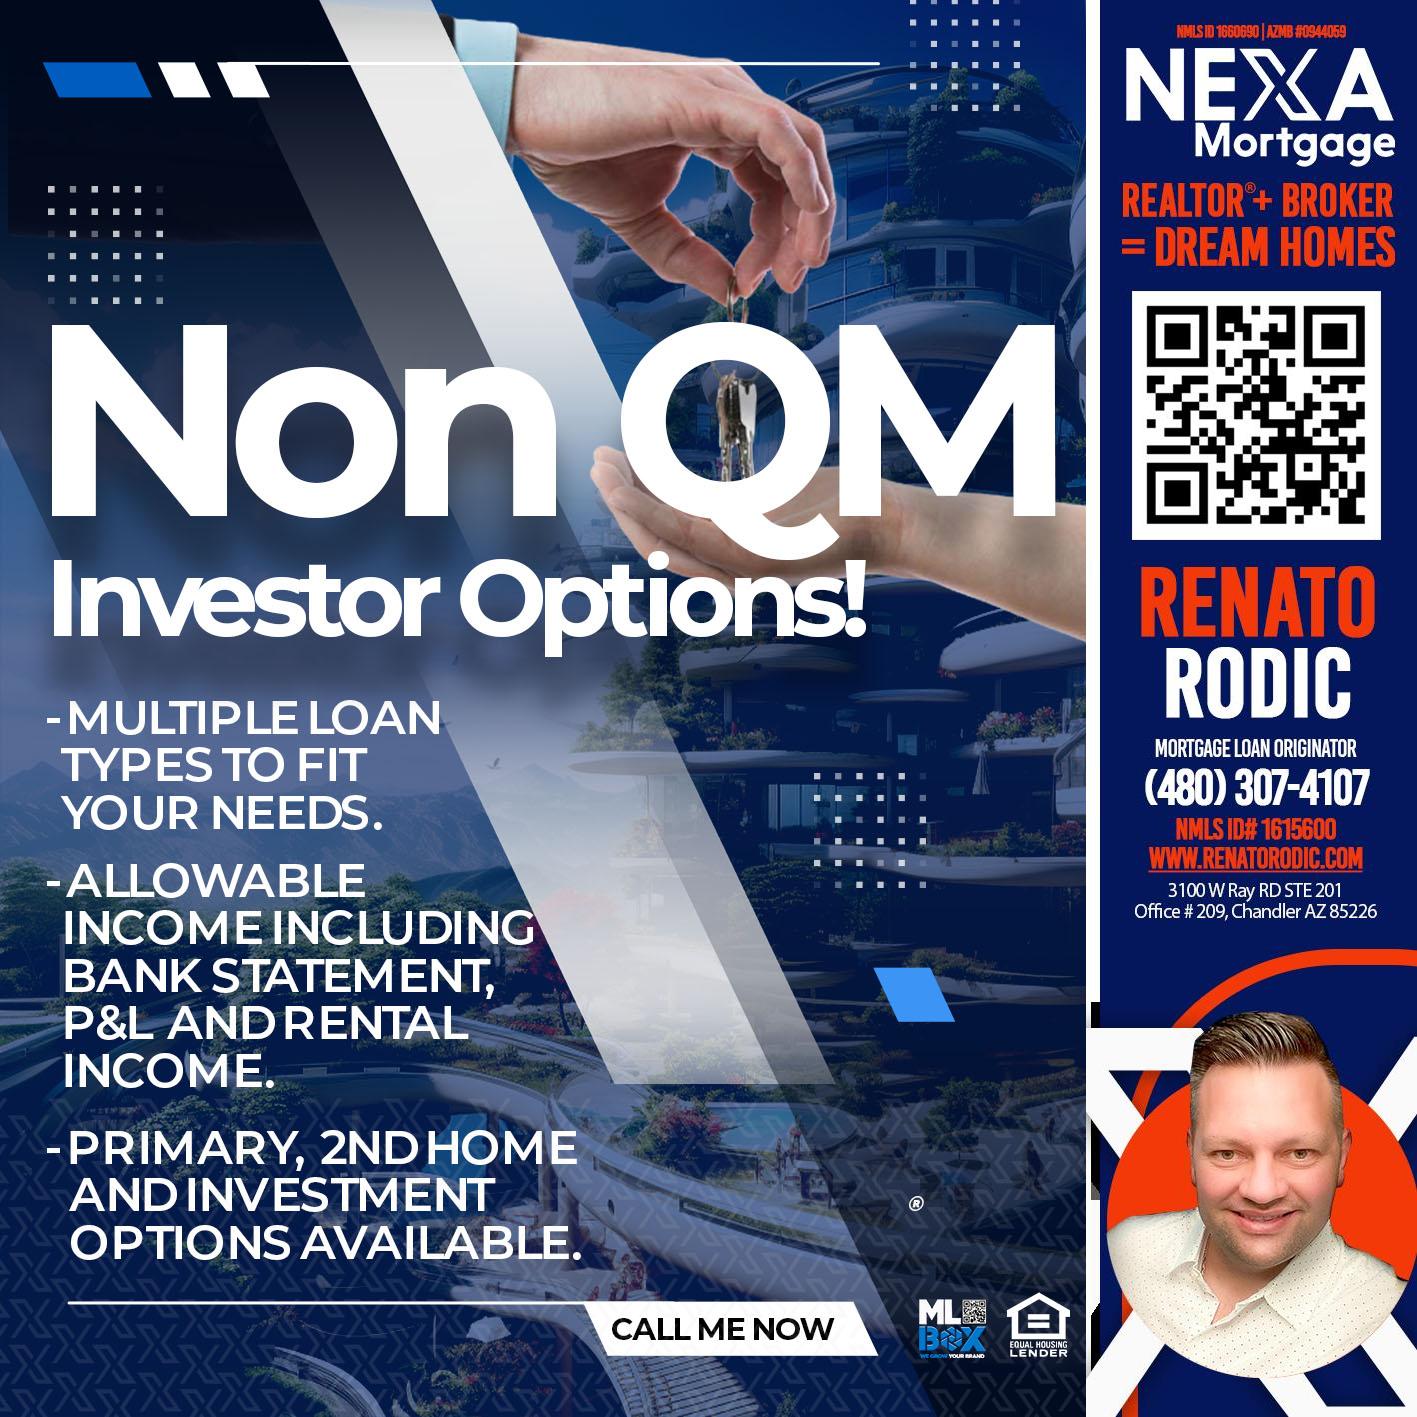 NON QM - Renato Rodic -Mortgage Loan Originator